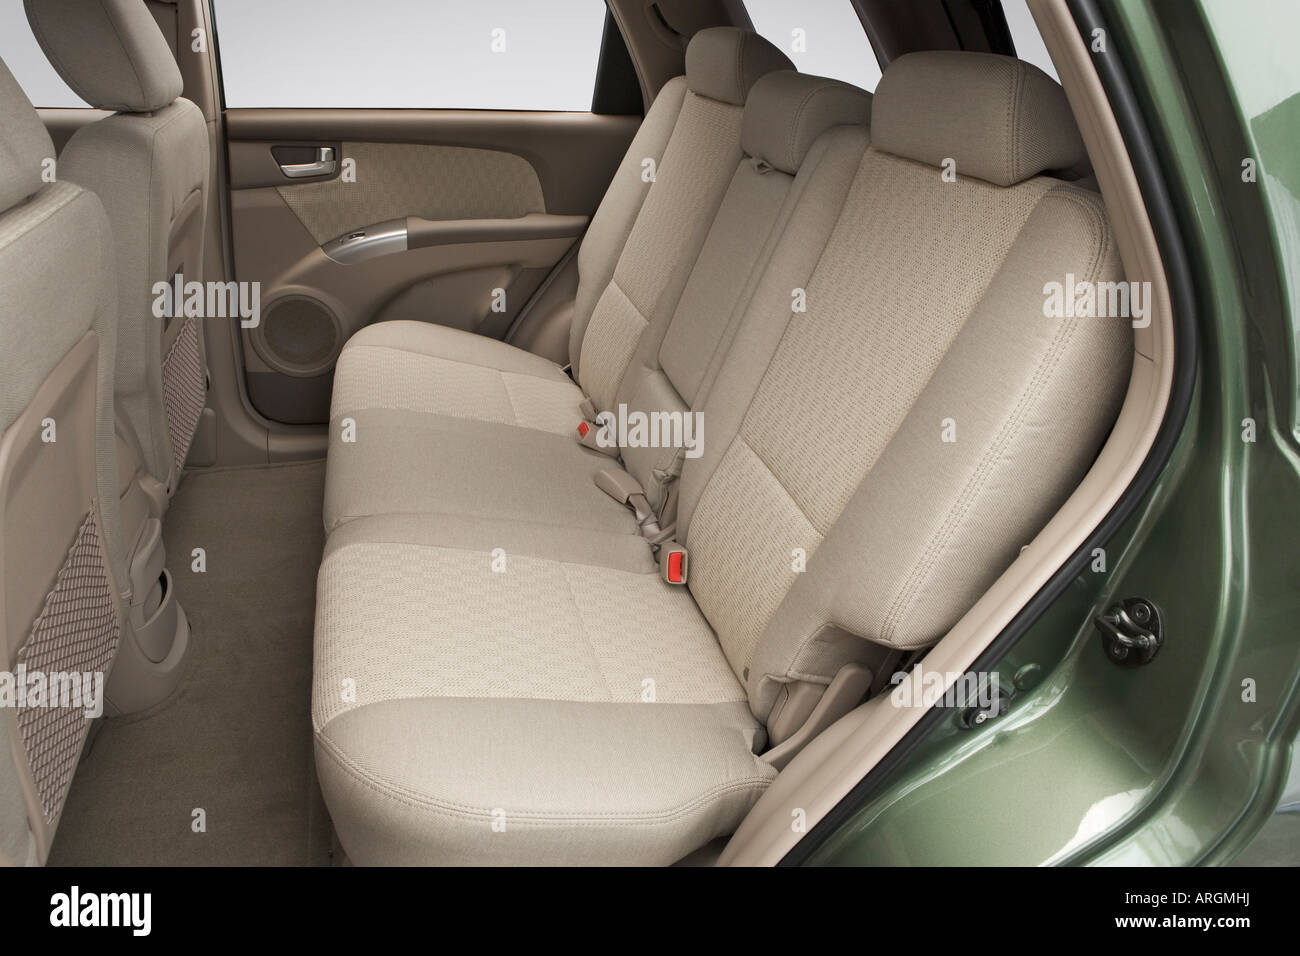 10396-Japan Used 2007 Kia Sportage Suv for Sale | Auto Link Holdings LLC